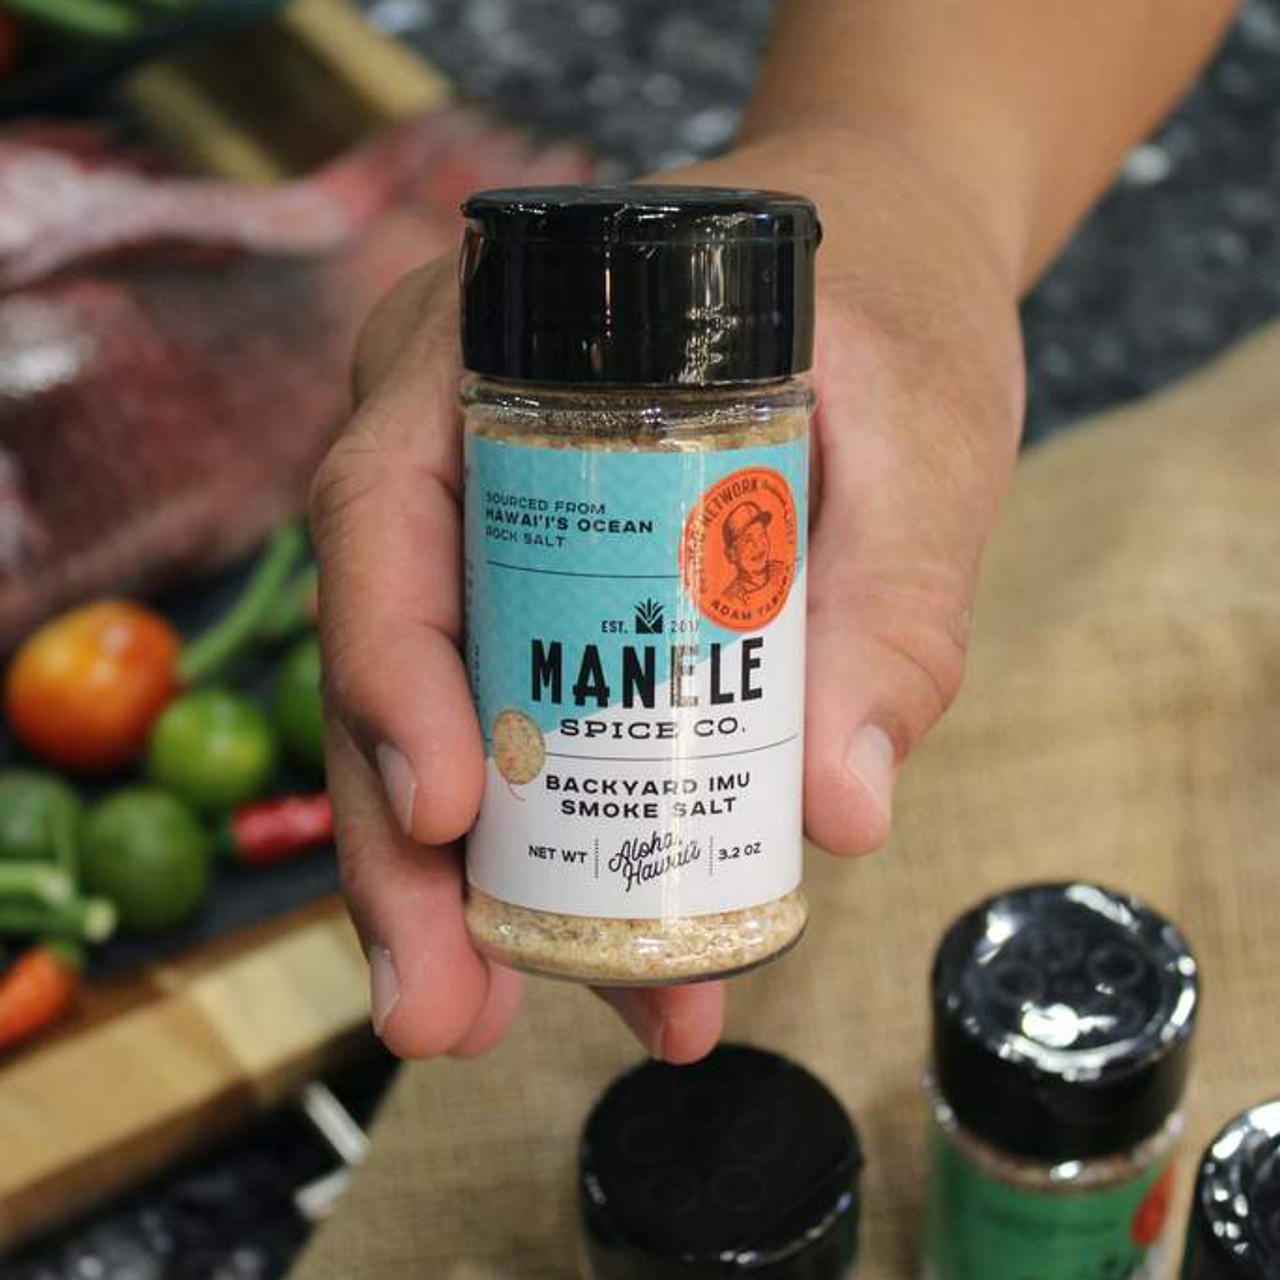 Manele Spice Backyard Imu Smoke Salt, 4 oz.